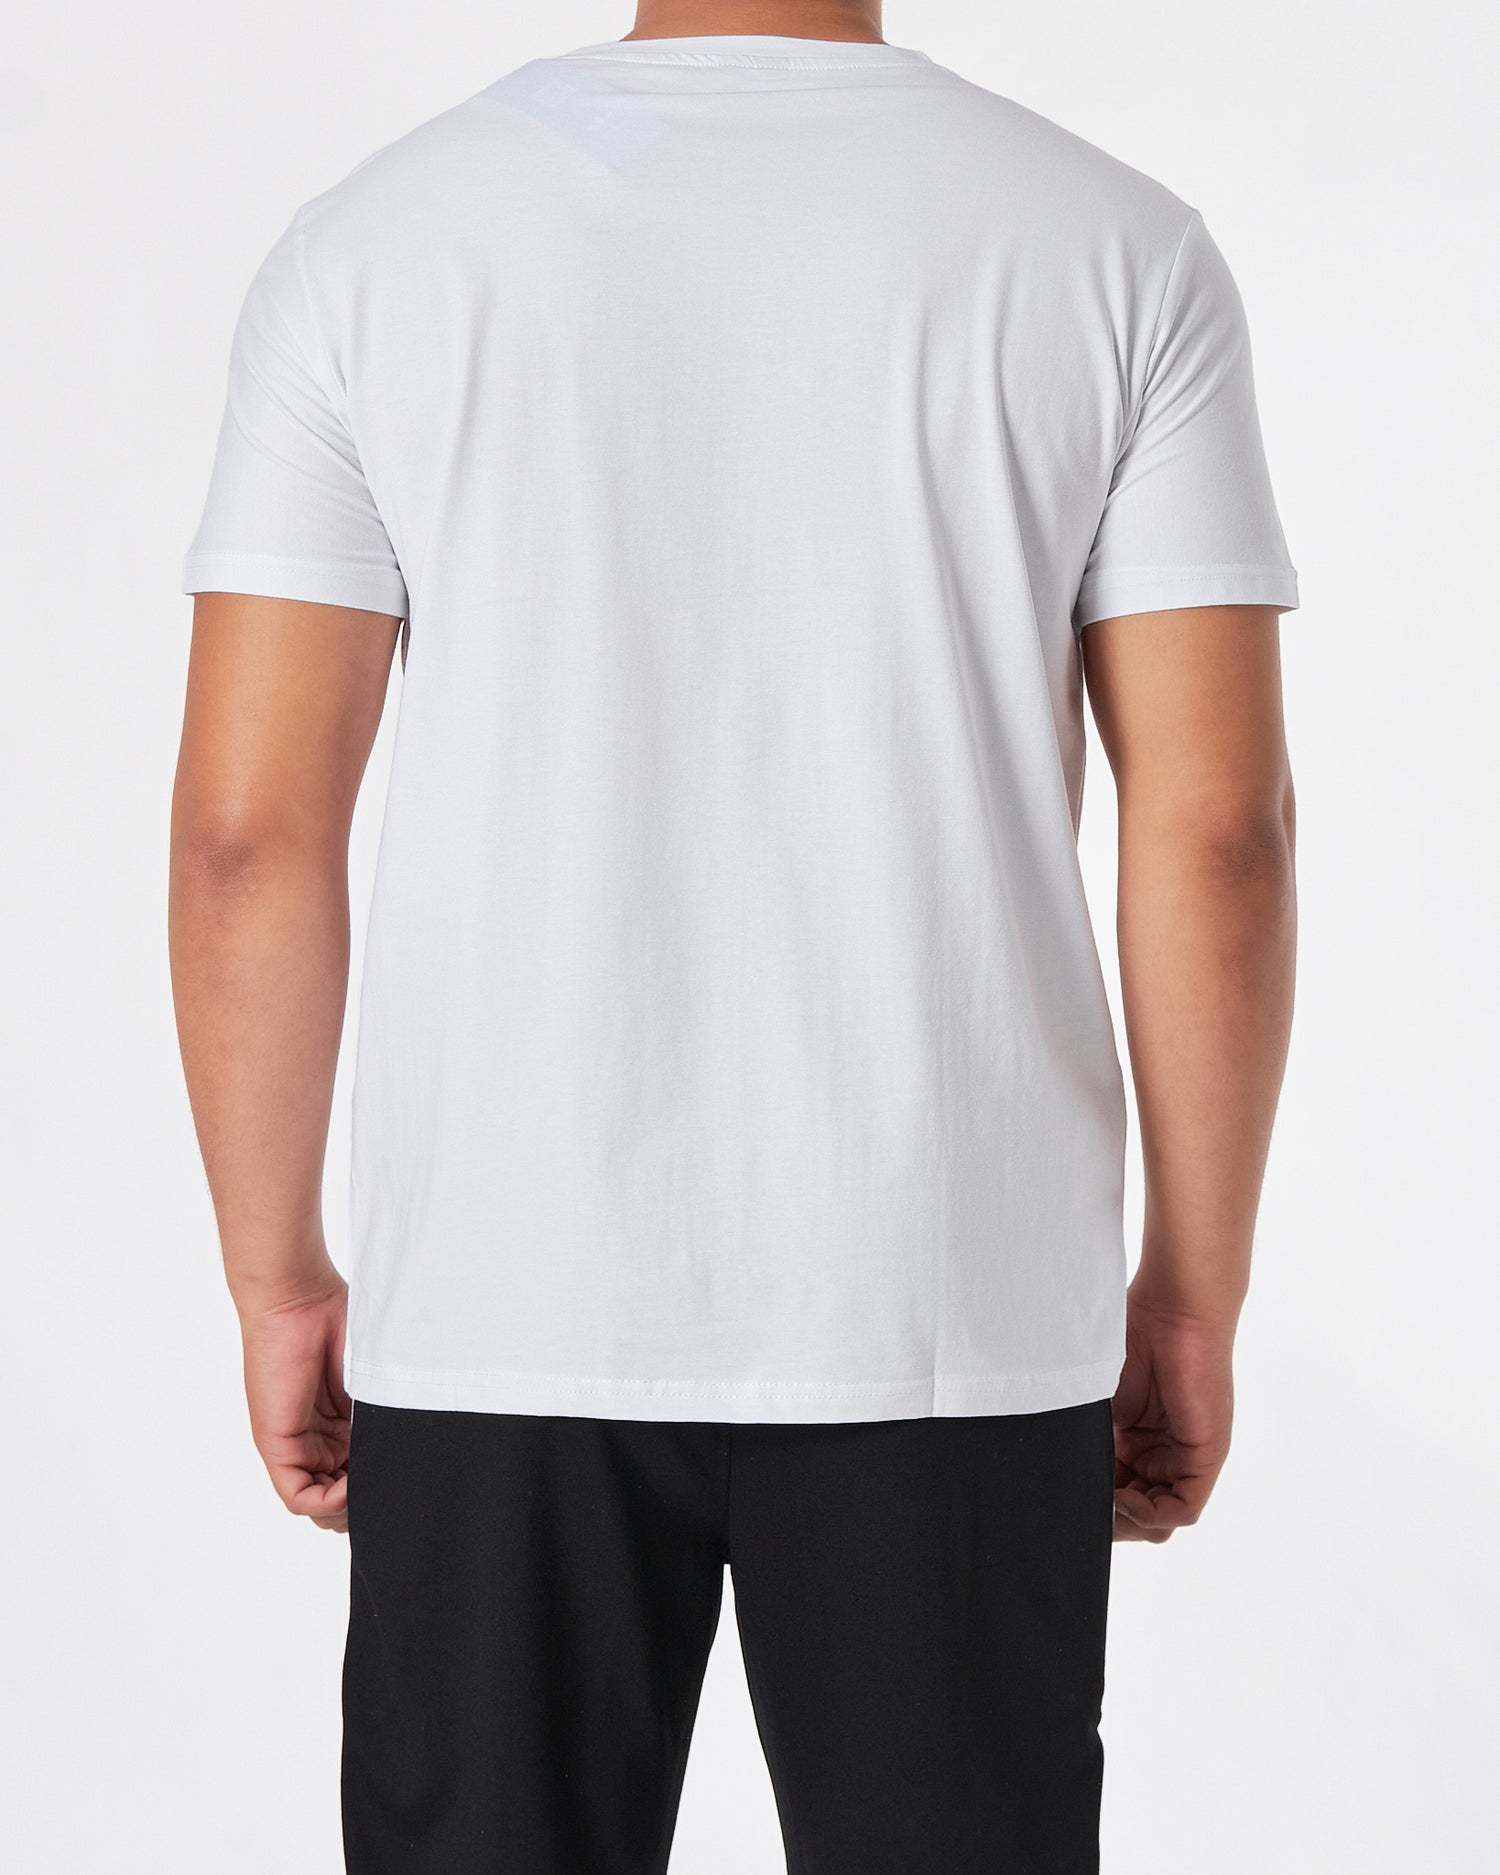 ADI Inter Logo Printed Men White T-Shirt 15.90